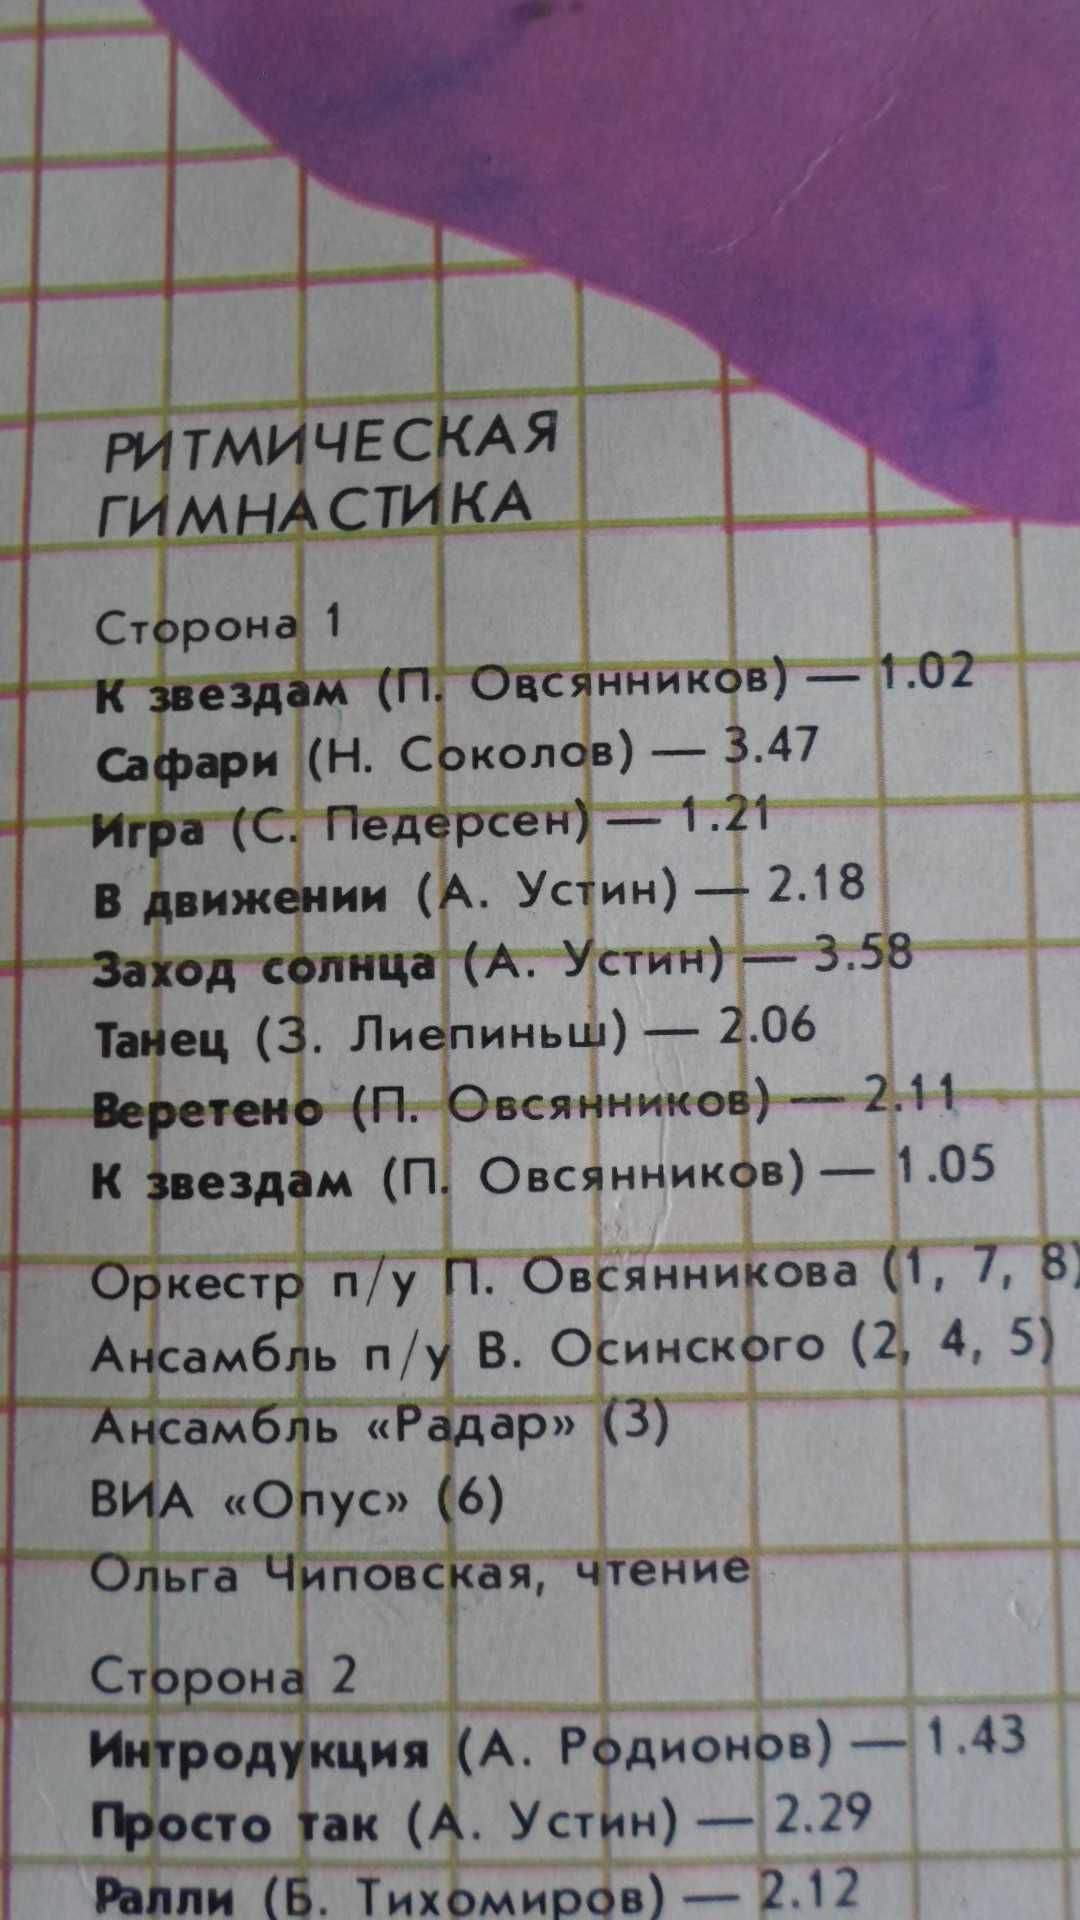 Пластинка "Ритмическая гимнастика" Мелодия 1984 г